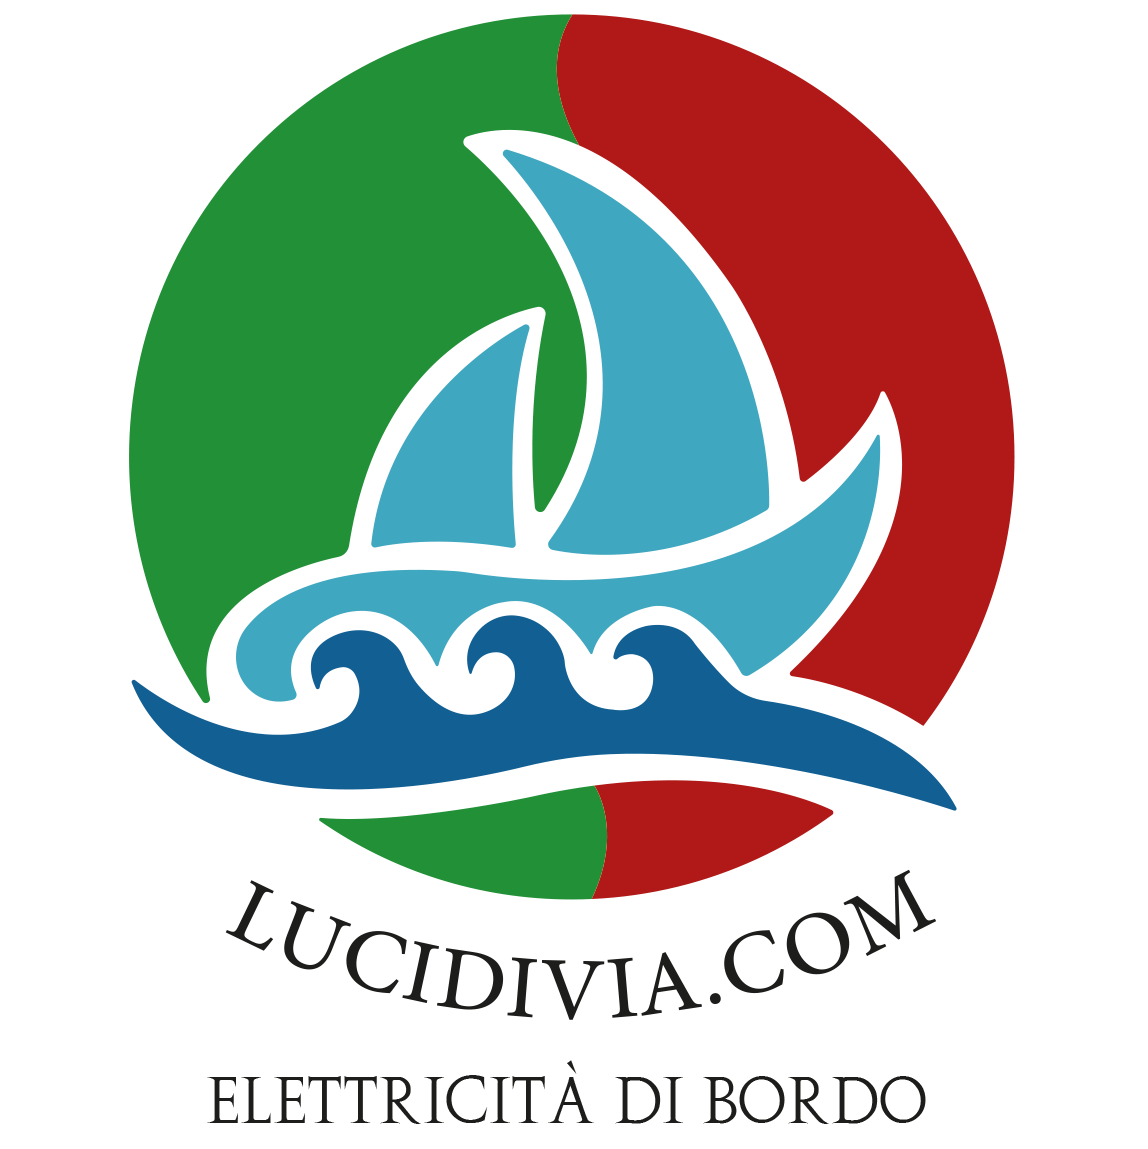 Lucidivia.com